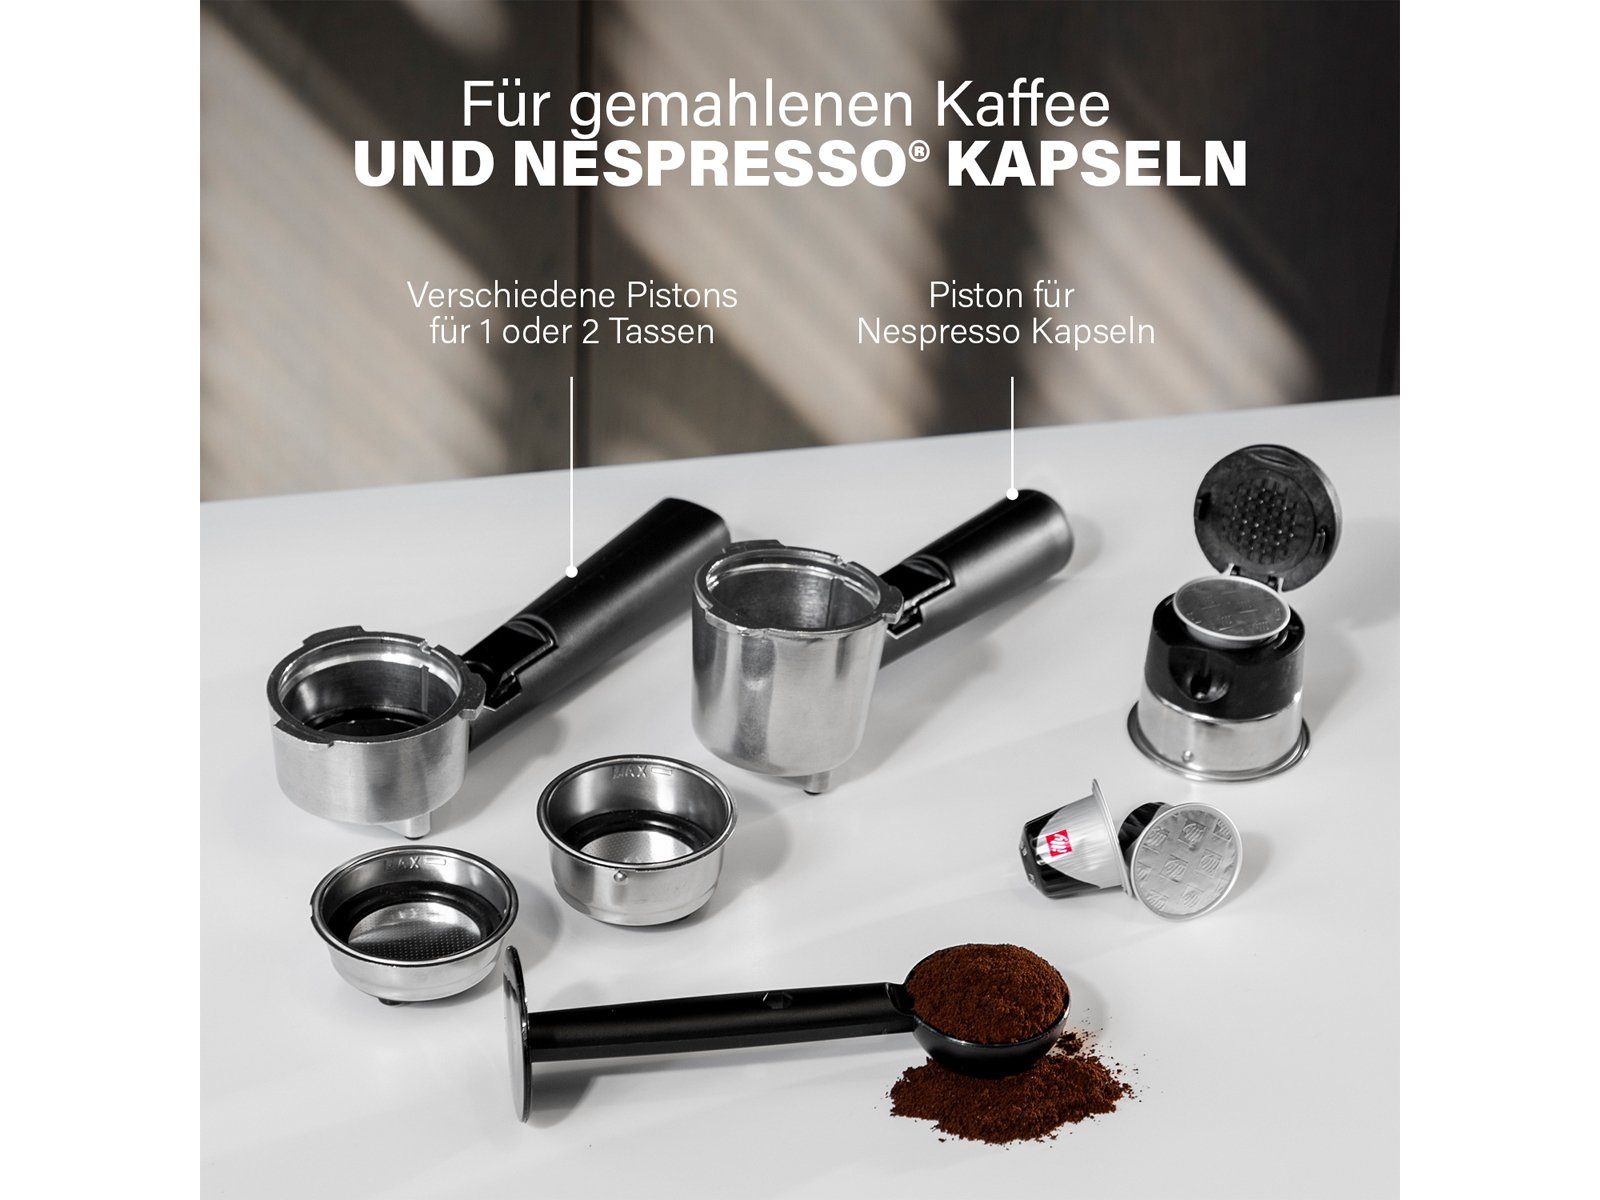 Milchaufschäumer kleine & Kaffee PRINCESS italienische Espresso-Maschine mit Siebträgermaschine,